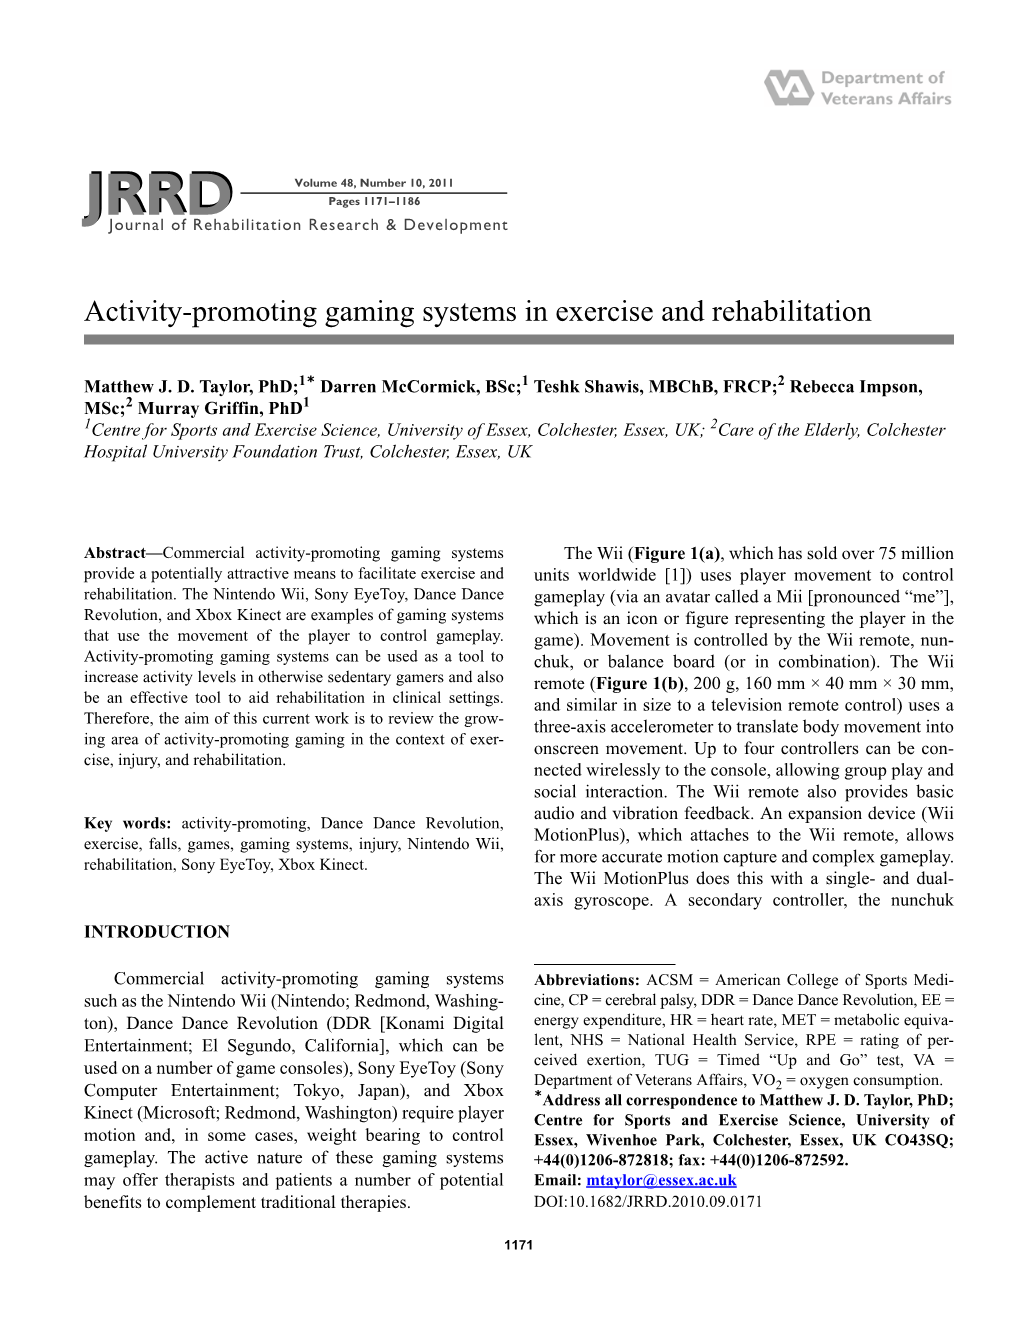 JRRD Volume 48, Number 10, 2011